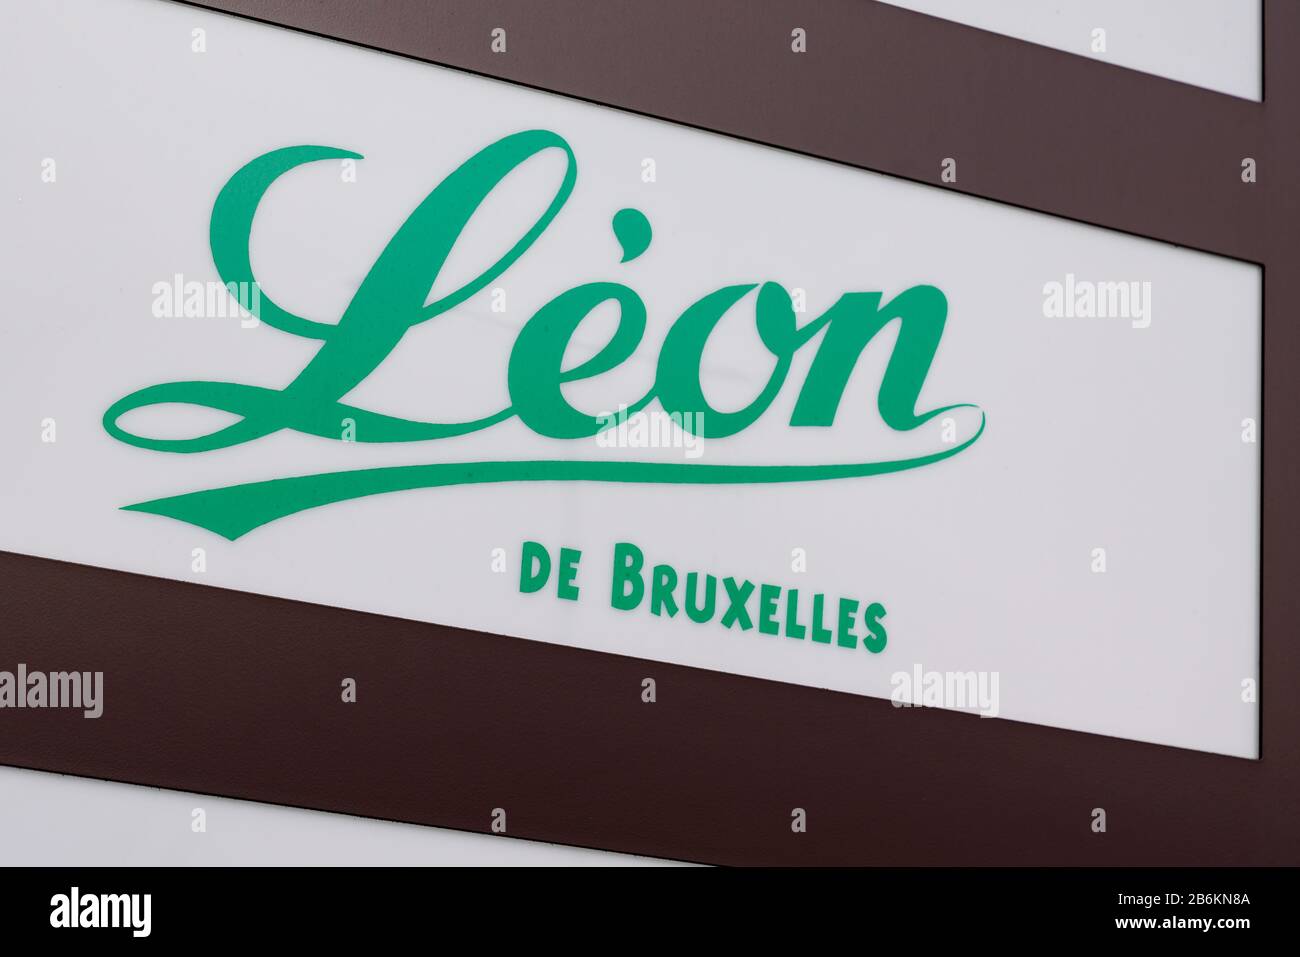 Bordeaux , Aquitaine / France - 11 07 2019 : leon de bruxelles marchio del ristorante marchio francese negozio di cucina belga Foto Stock